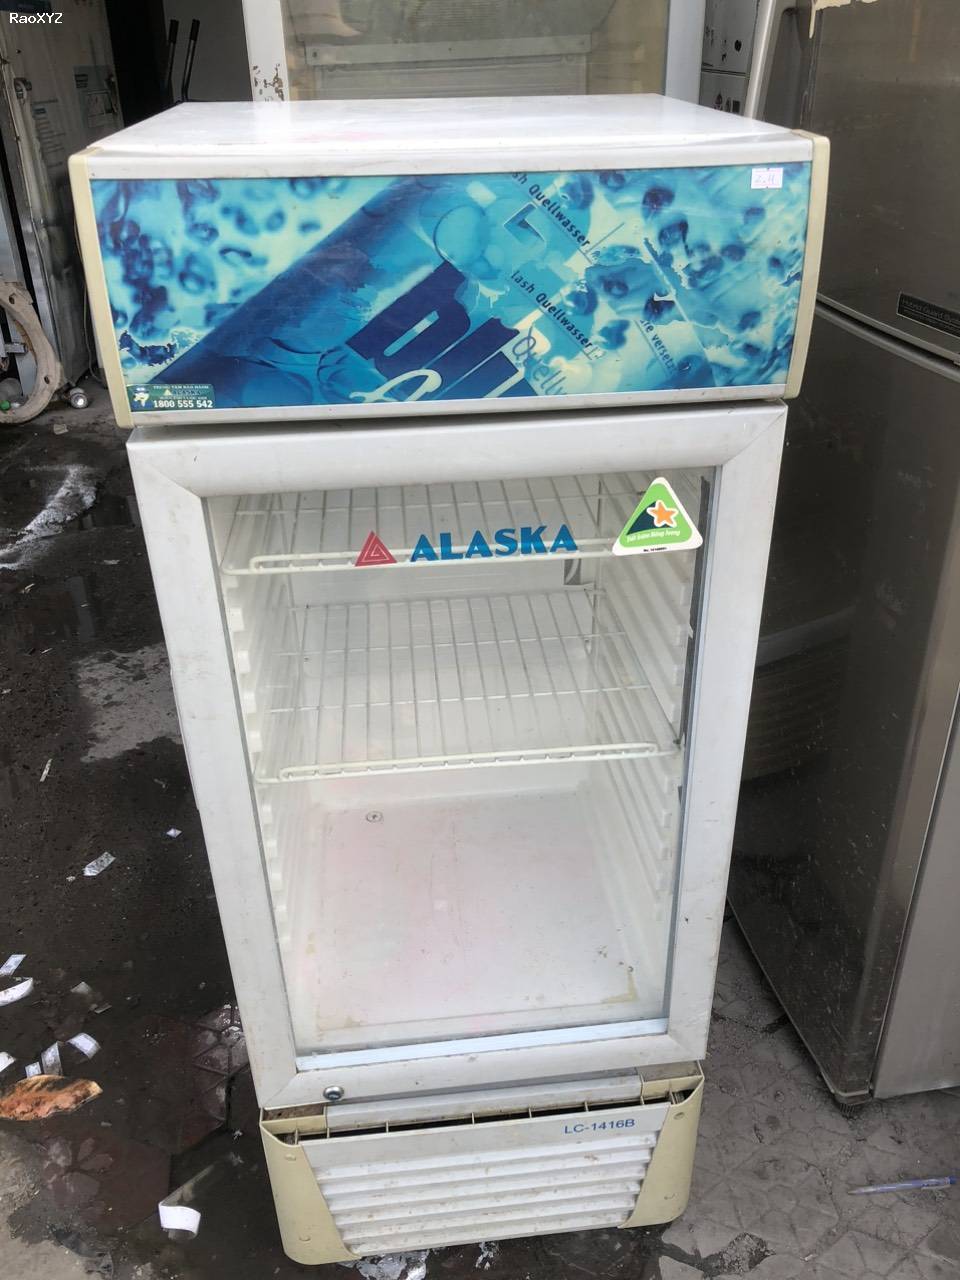 Tủ mát Alaska 160lit lạnh tốt đã qua sử dụng